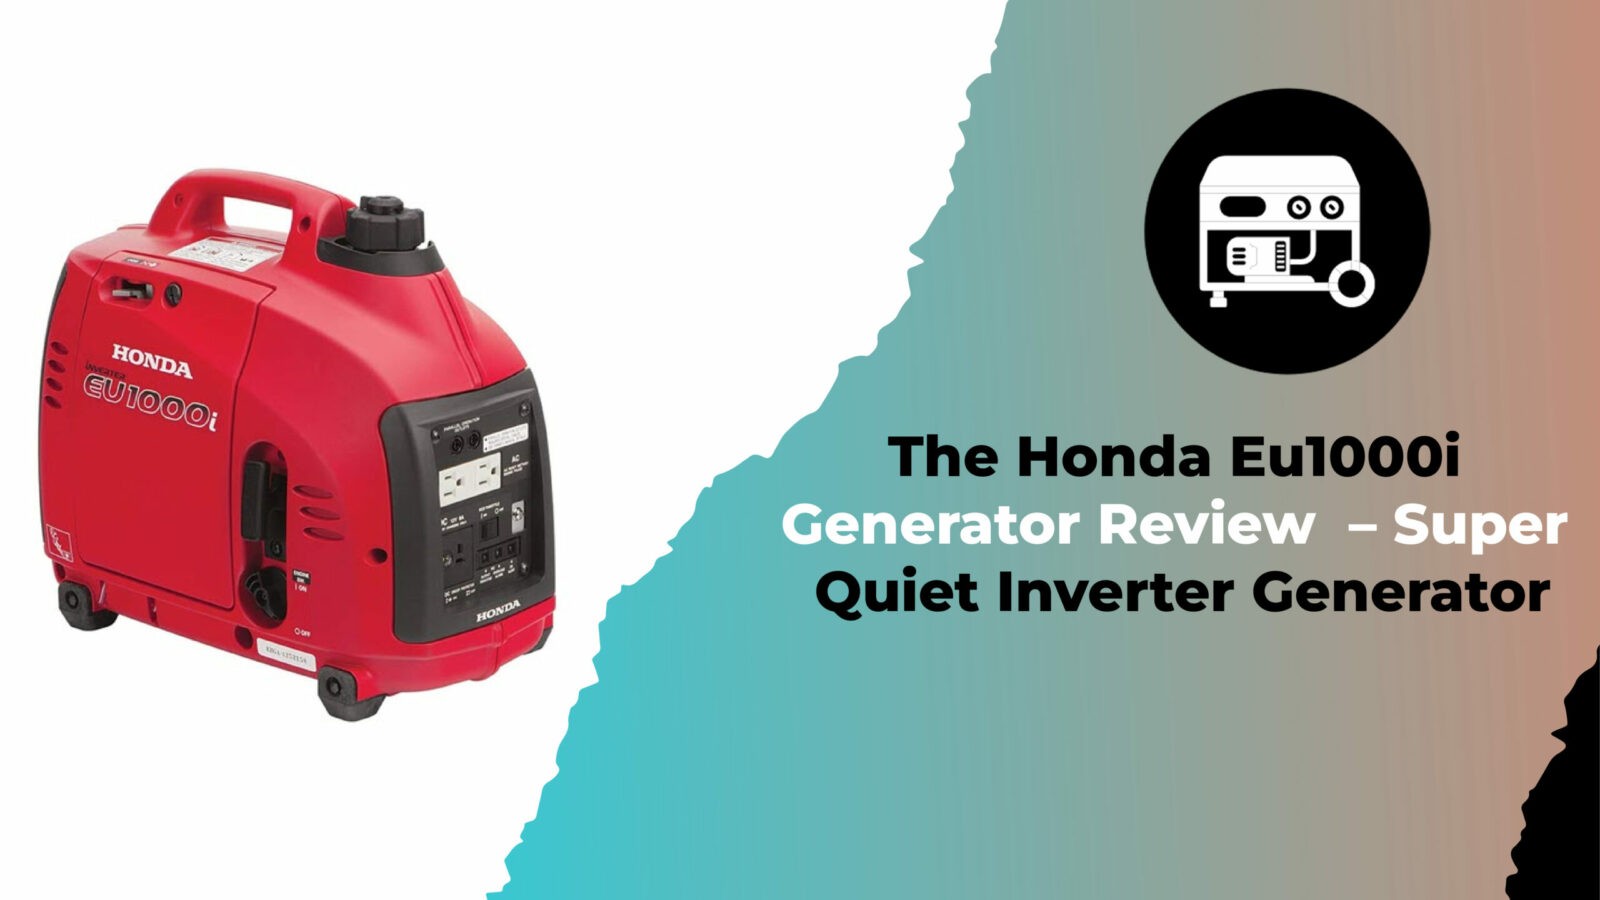 The Honda Eu1000i Generator Review – Super Quiet Inverter Generator